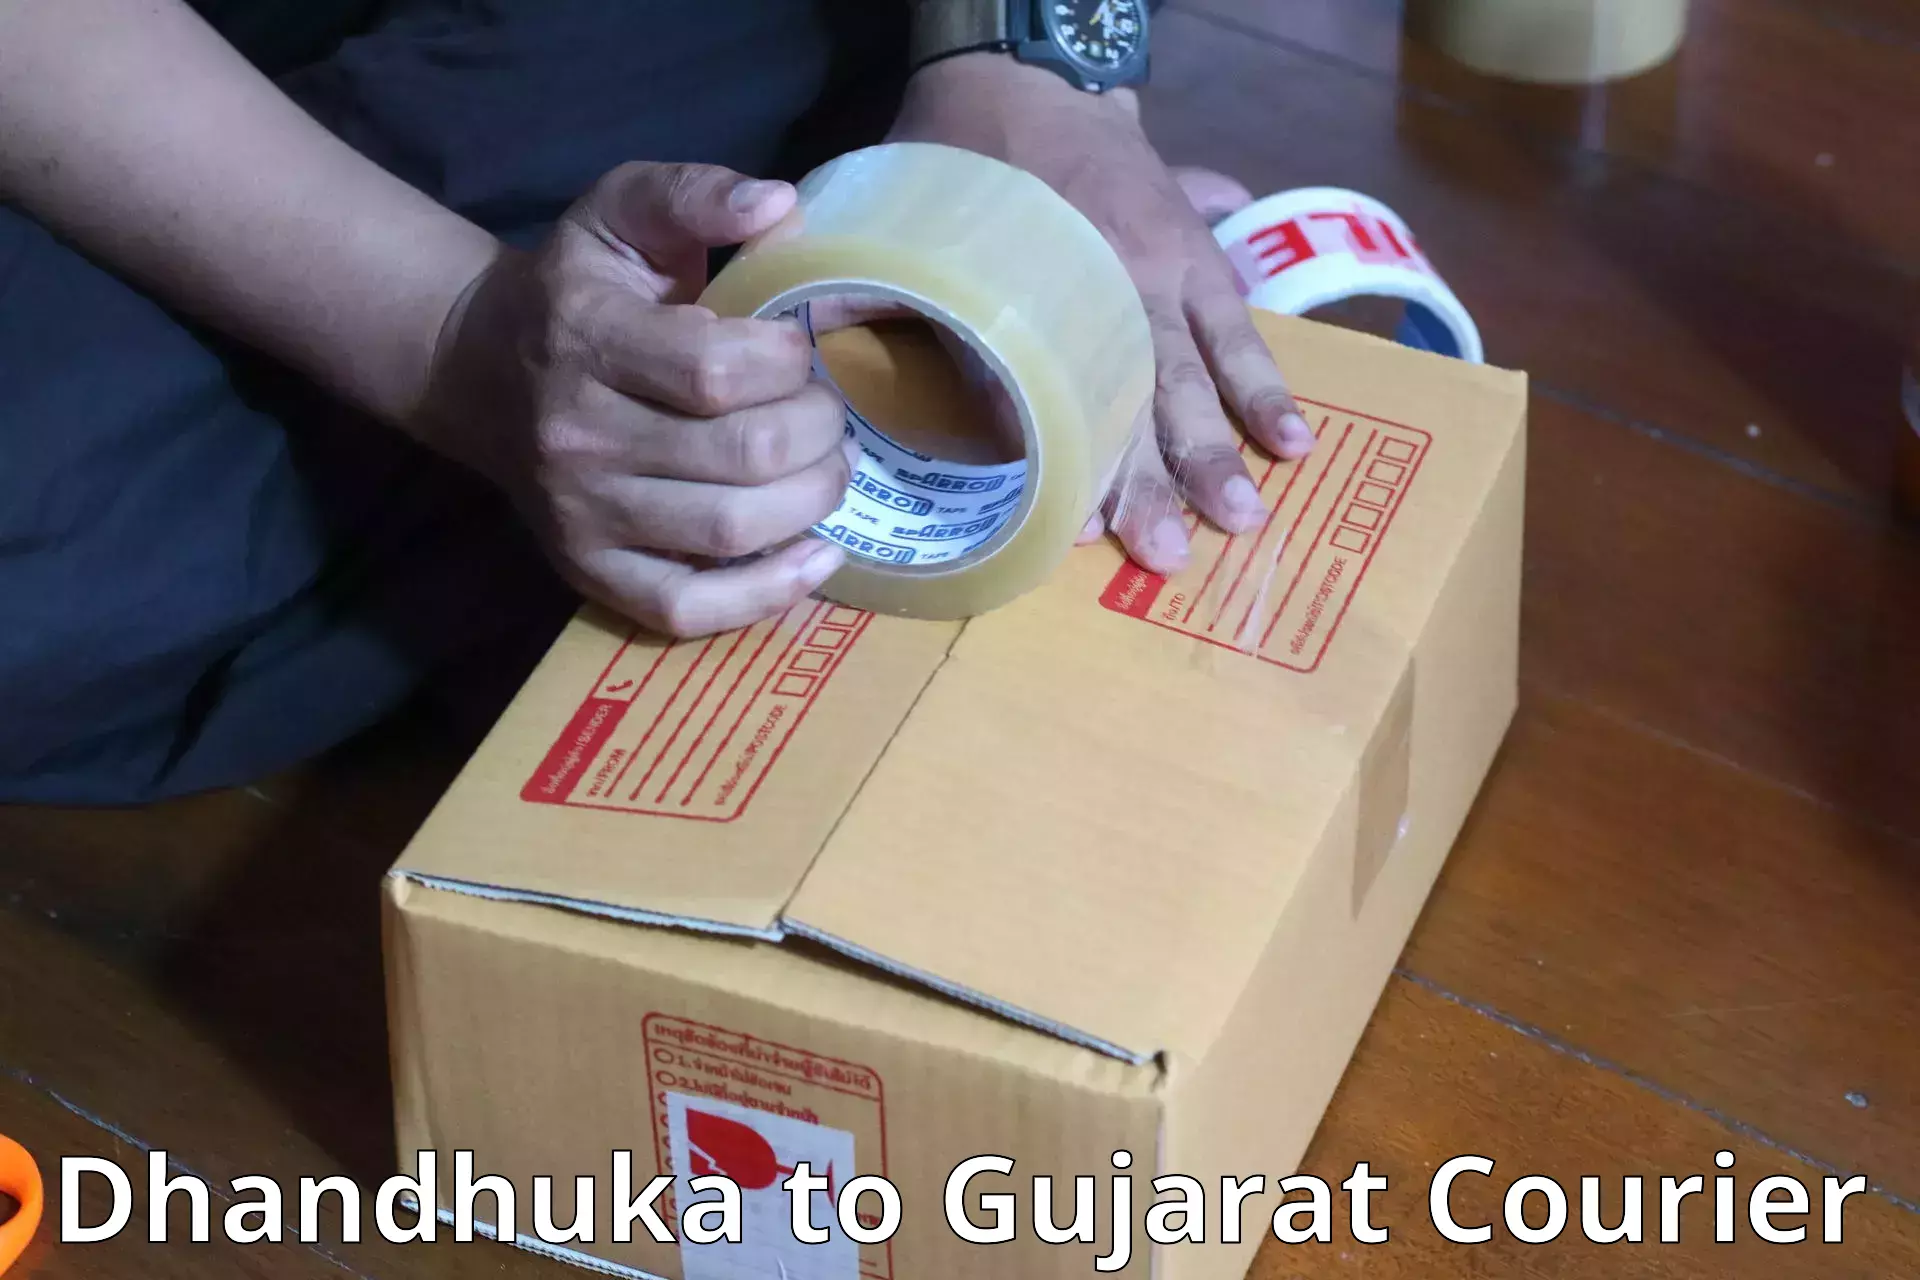 Baggage transport services Dhandhuka to Gujarat